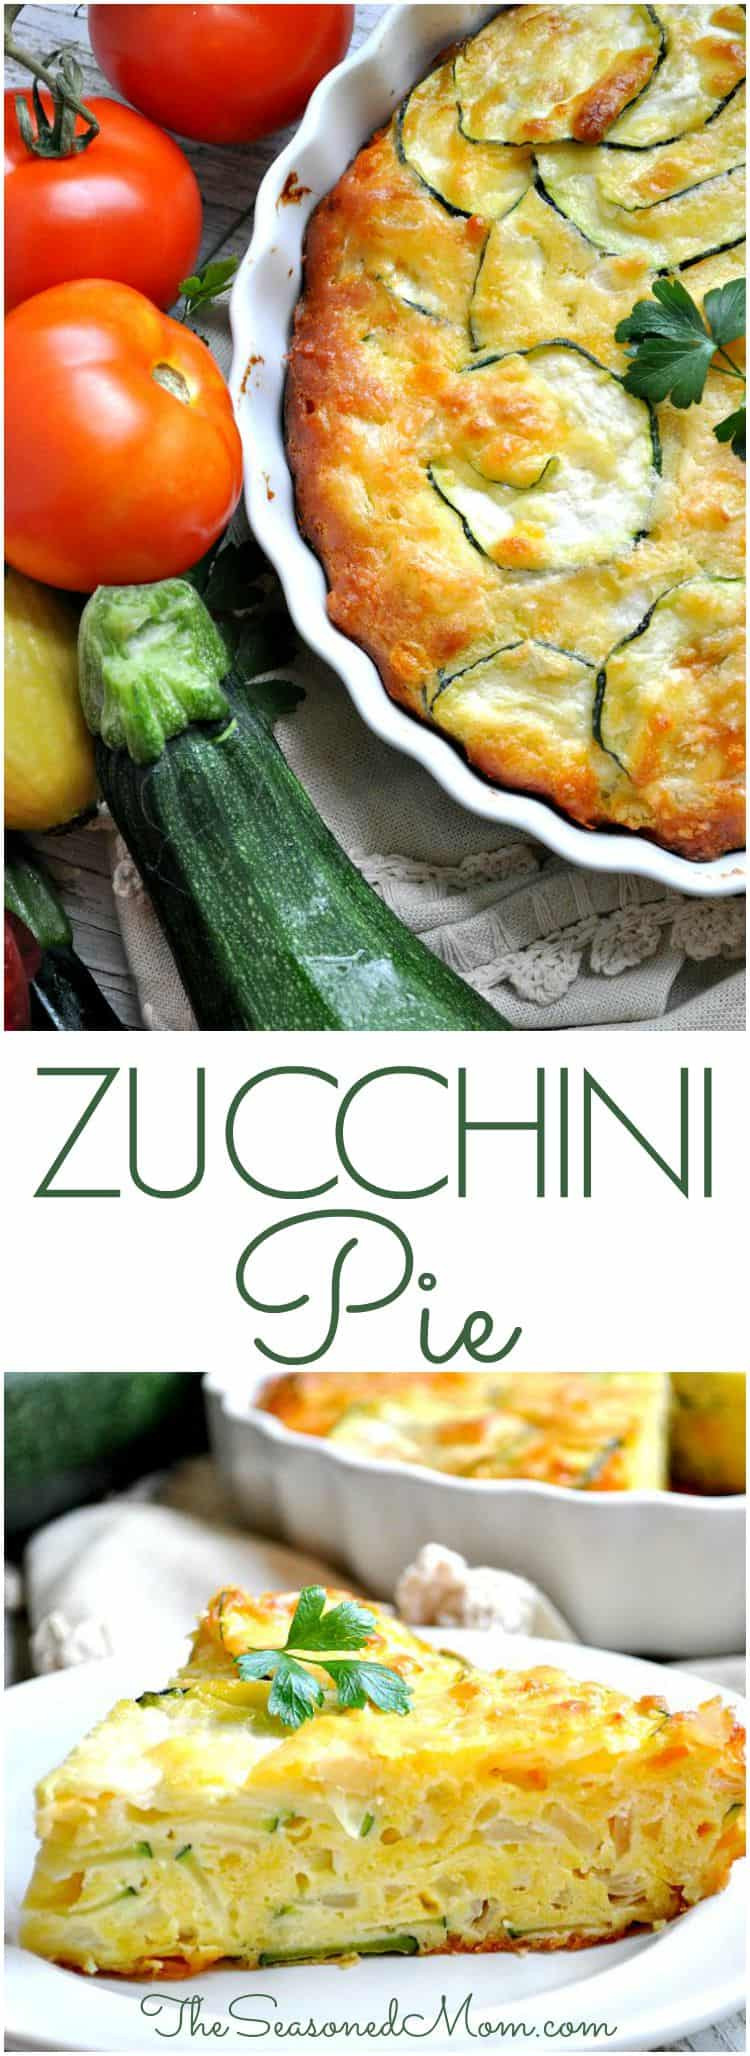 Main Dish Pie Recipes
 Zucchini Pie The Seasoned Mom